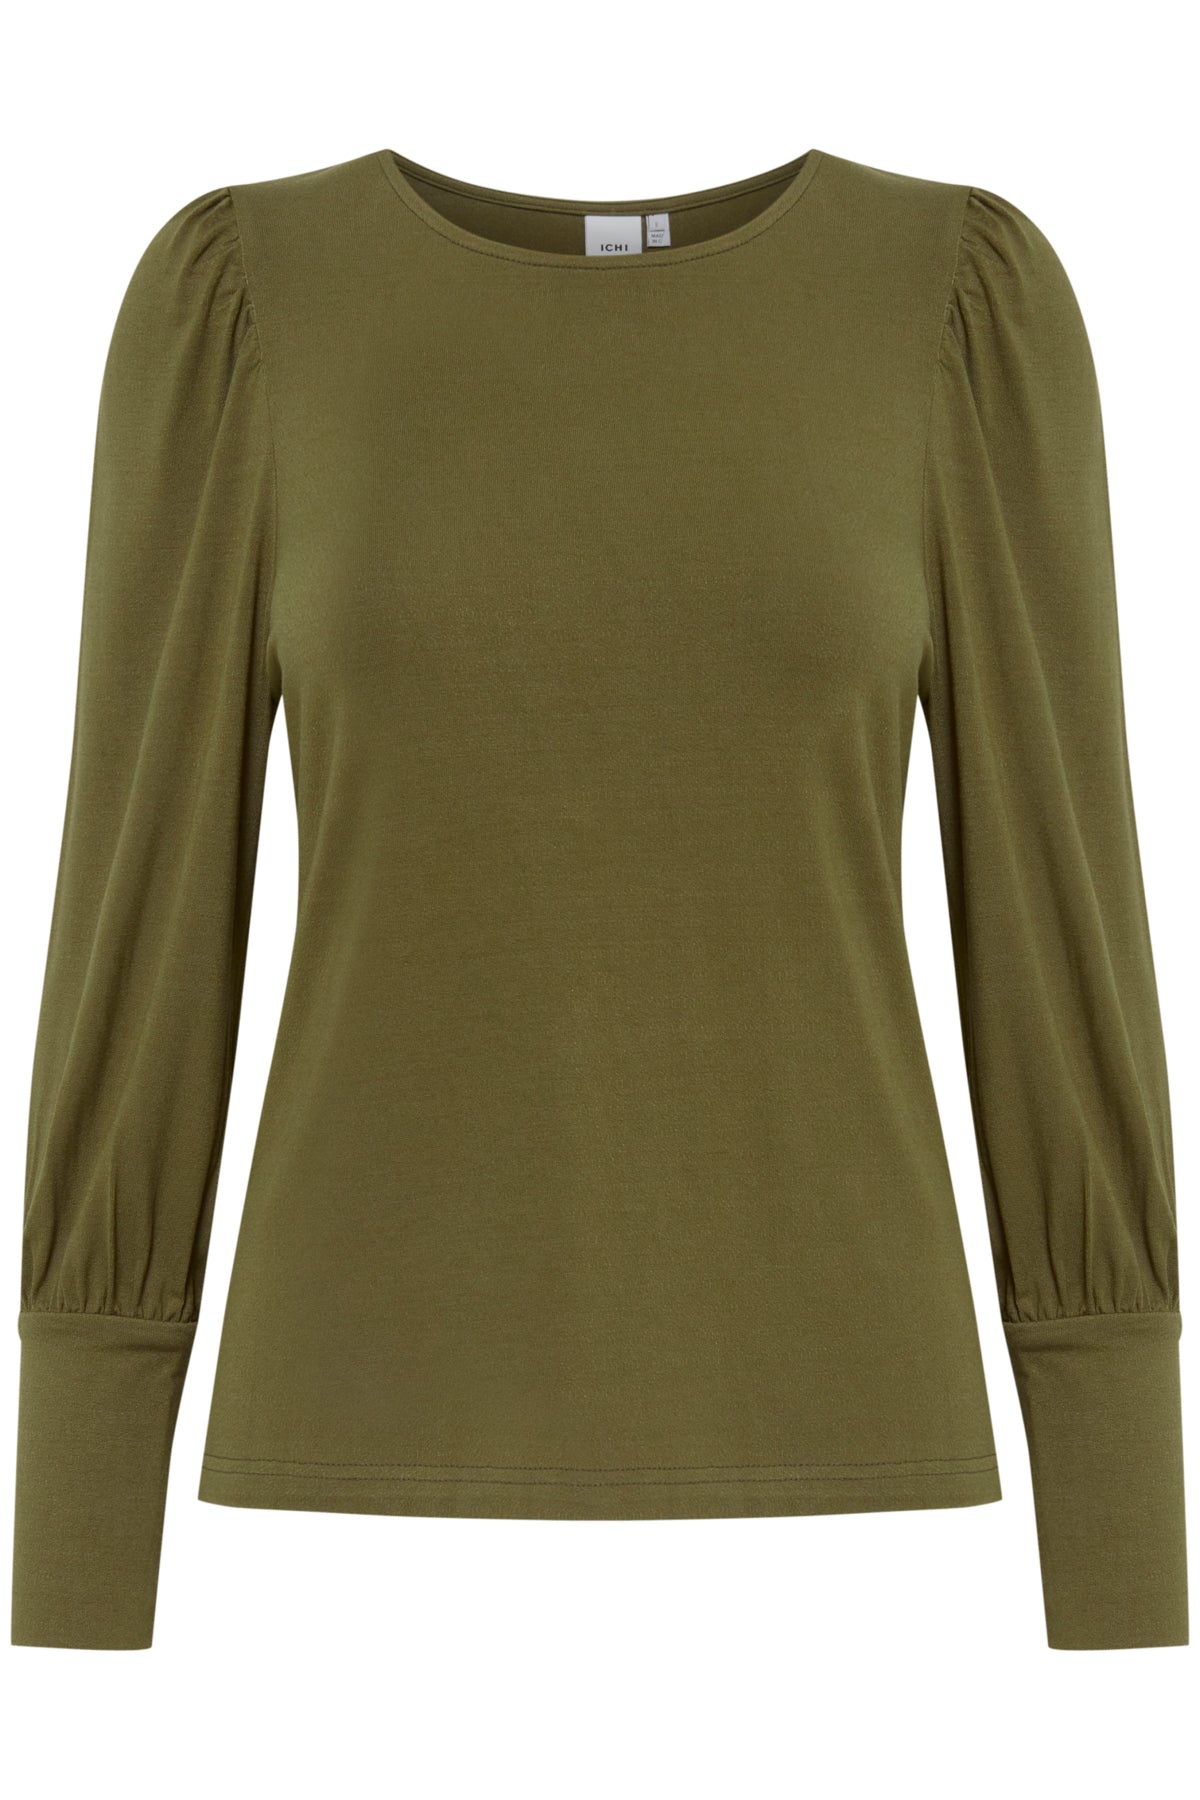 Lucinda Long Sleeve T- Shirt (Khaki)